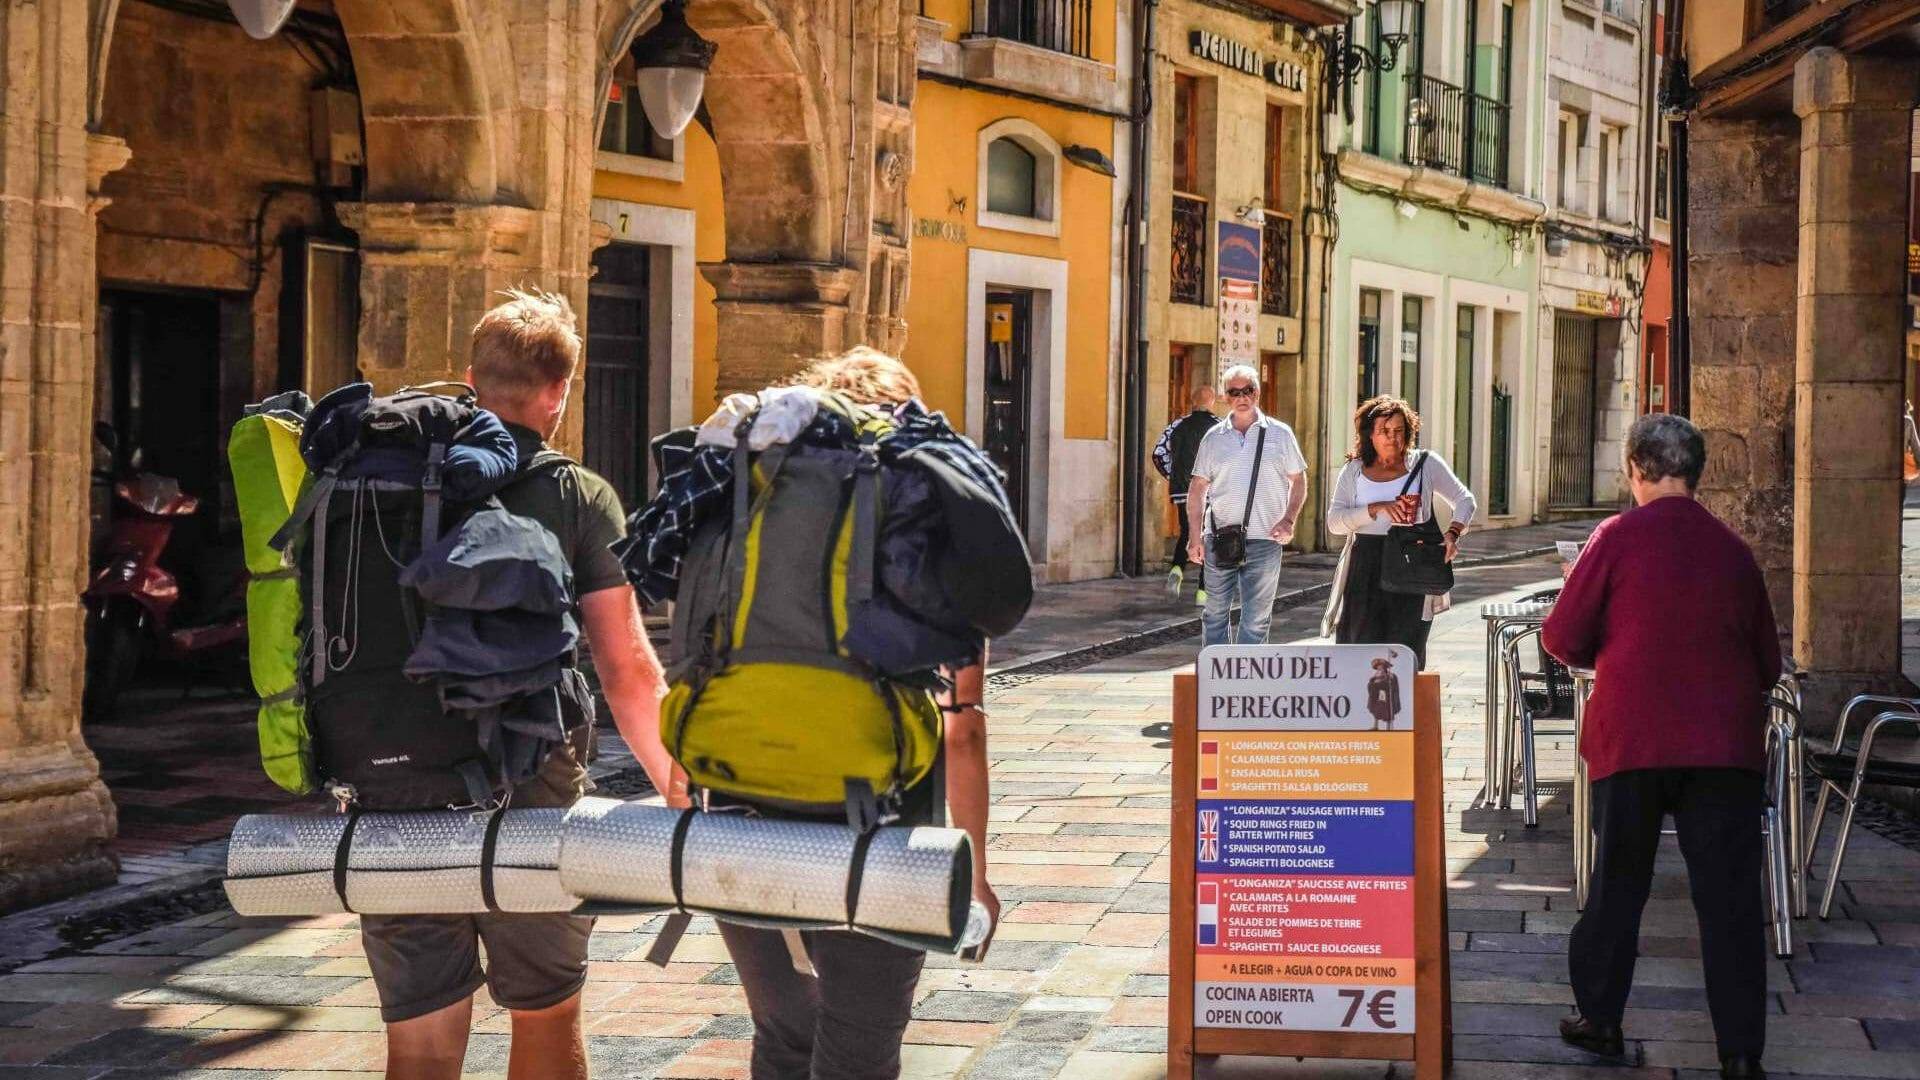 La calle Rivero tiene cinco siglos de historia y es el paso obligado de los peregrinos por Avilés. ©Mampiris.